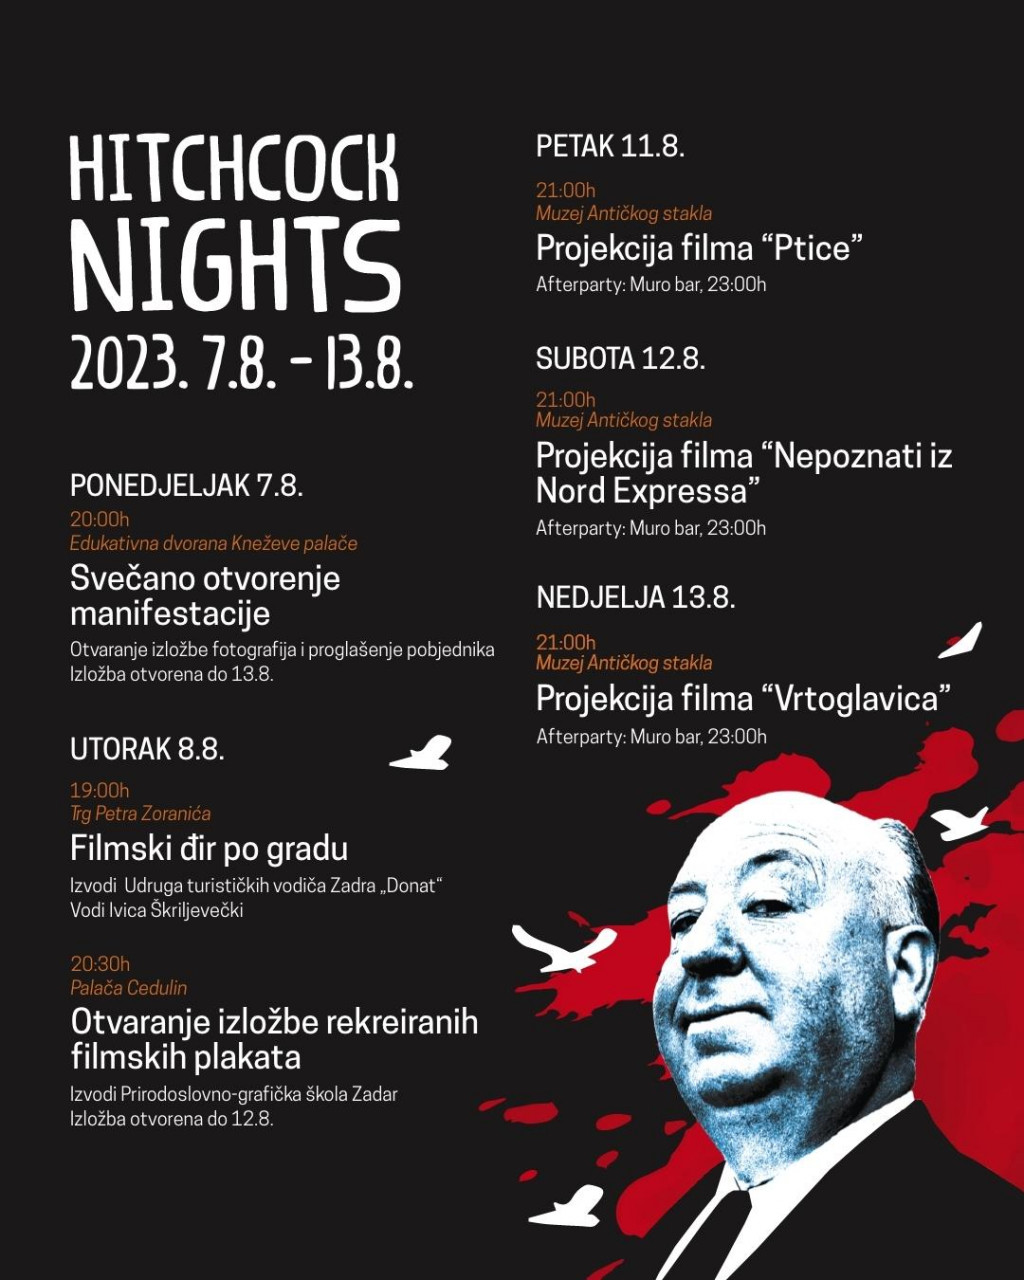 &lt;p&gt;Objavljen detaljan program ”Hitchock Nights!&lt;/p&gt;